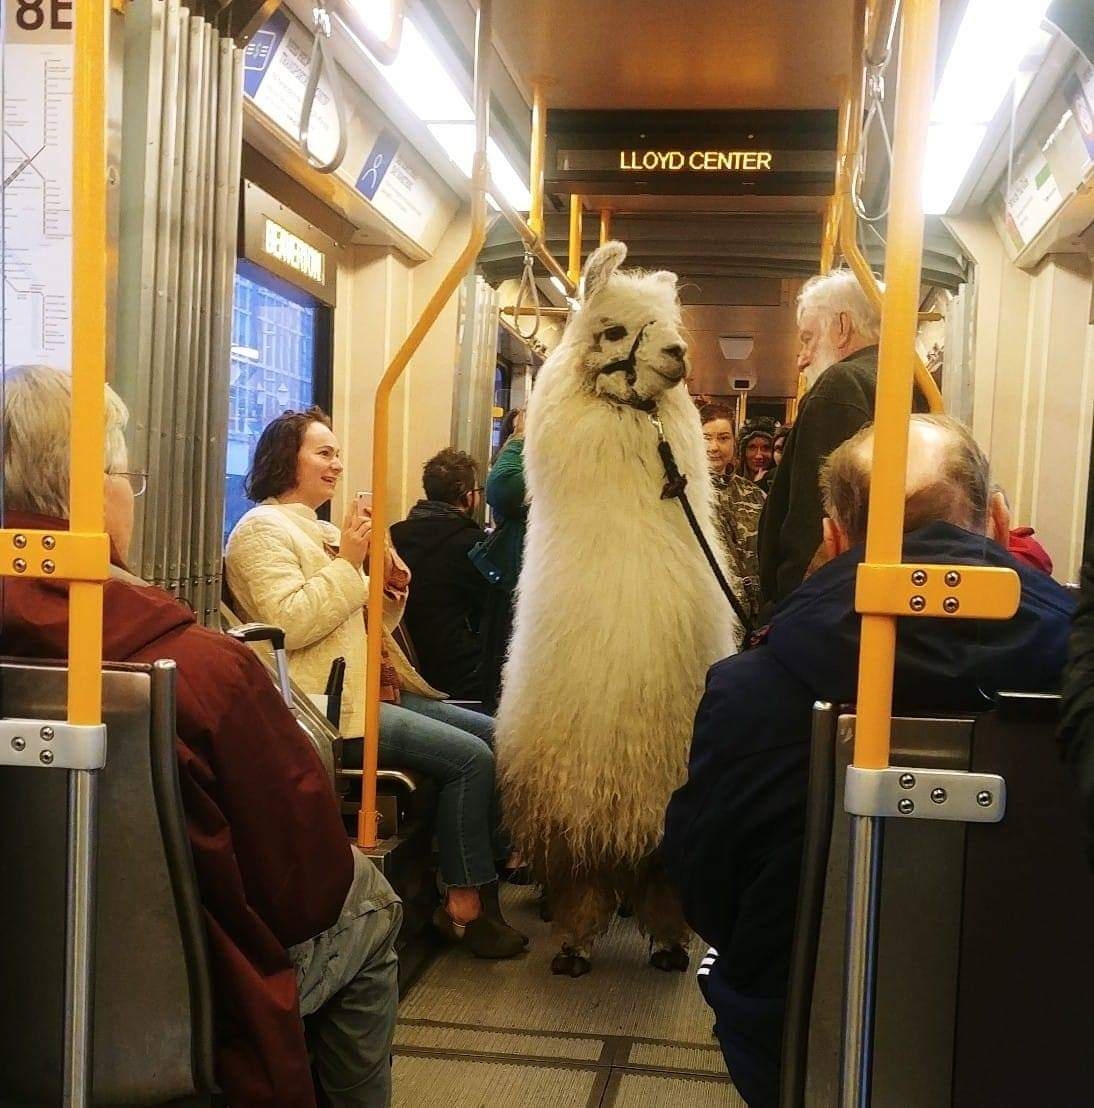 llama on a train - Be Lloyd Center